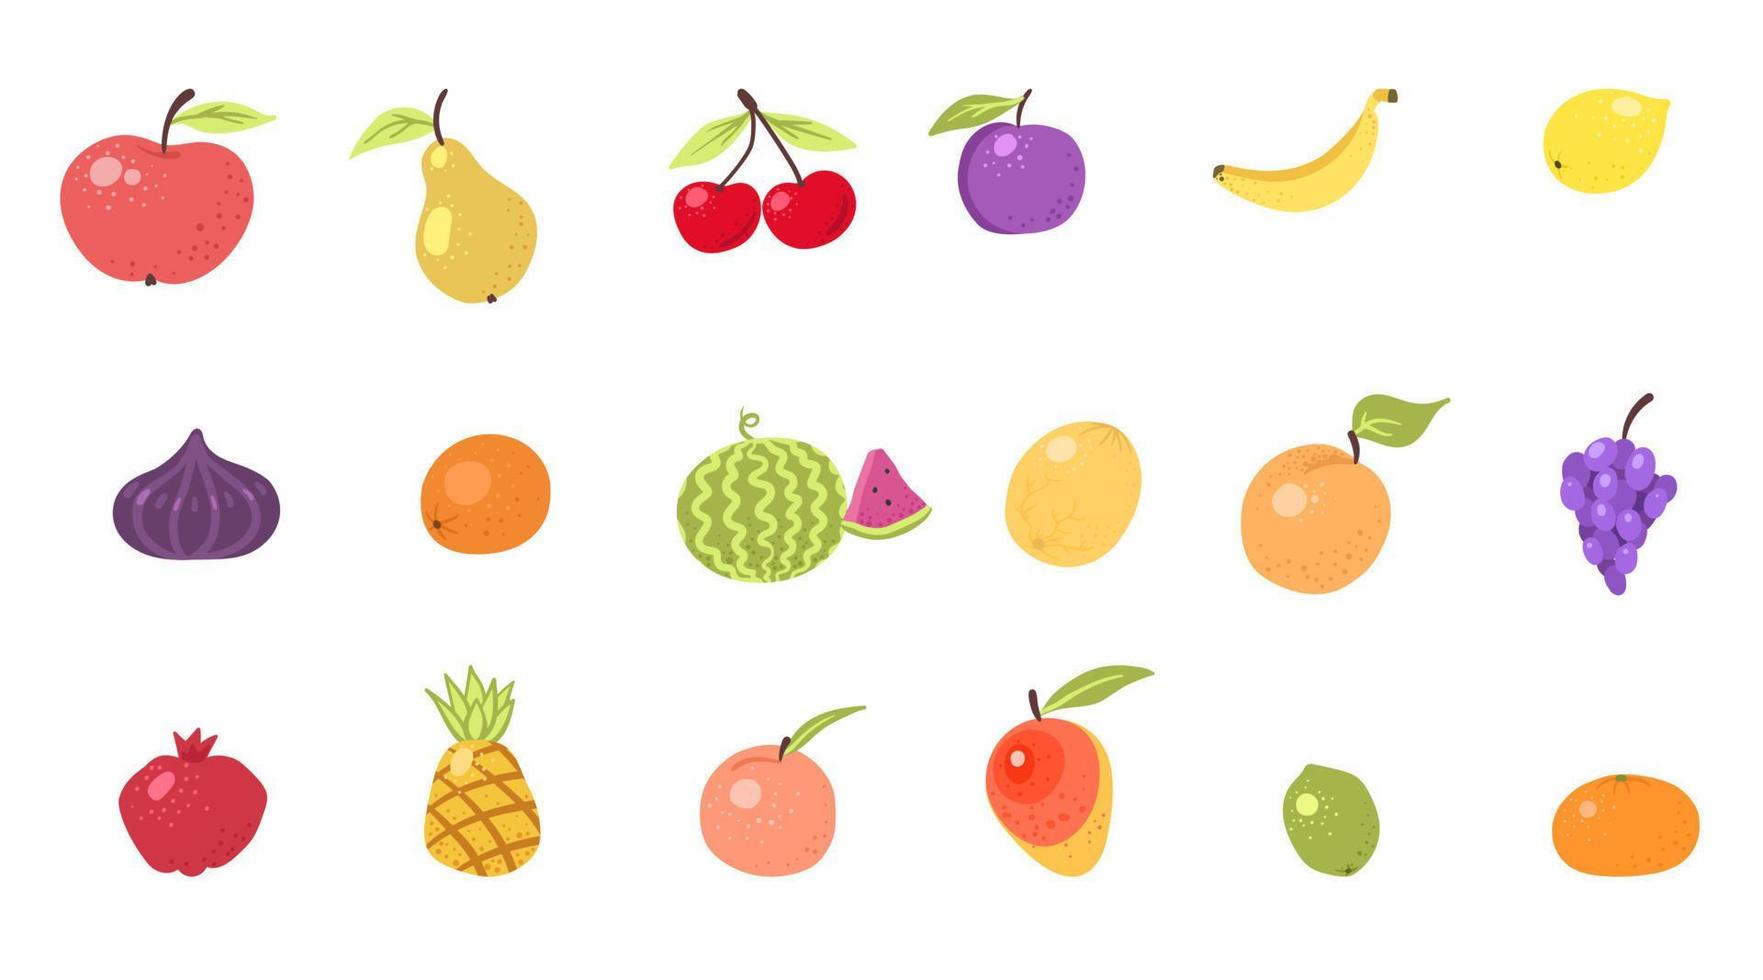 conjunto de vetores de ícones de doodle desenhado bonito frutas e bagas. ilustração de frutas coloridas e monocromáticas para design de produtos agrícolas. cozinha, comida vegetariana. limão, banana, laranja, tangerina, pêra, maçã.